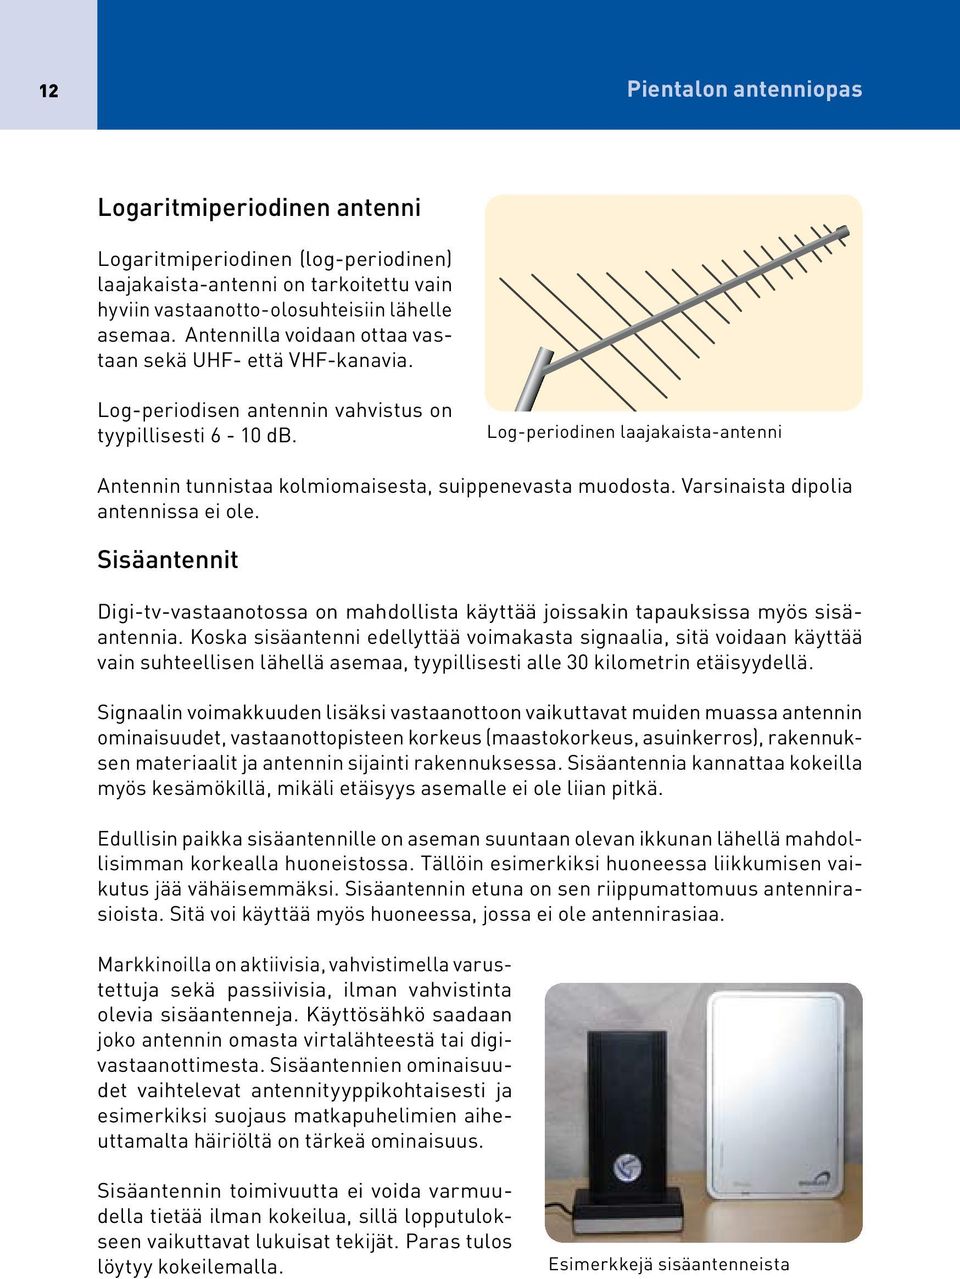 Log-periodinen laajakaista-antenni Antennin tunnistaa kolmiomaisesta, suippenevasta muodosta. Varsinaista dipolia antennissa ei ole.